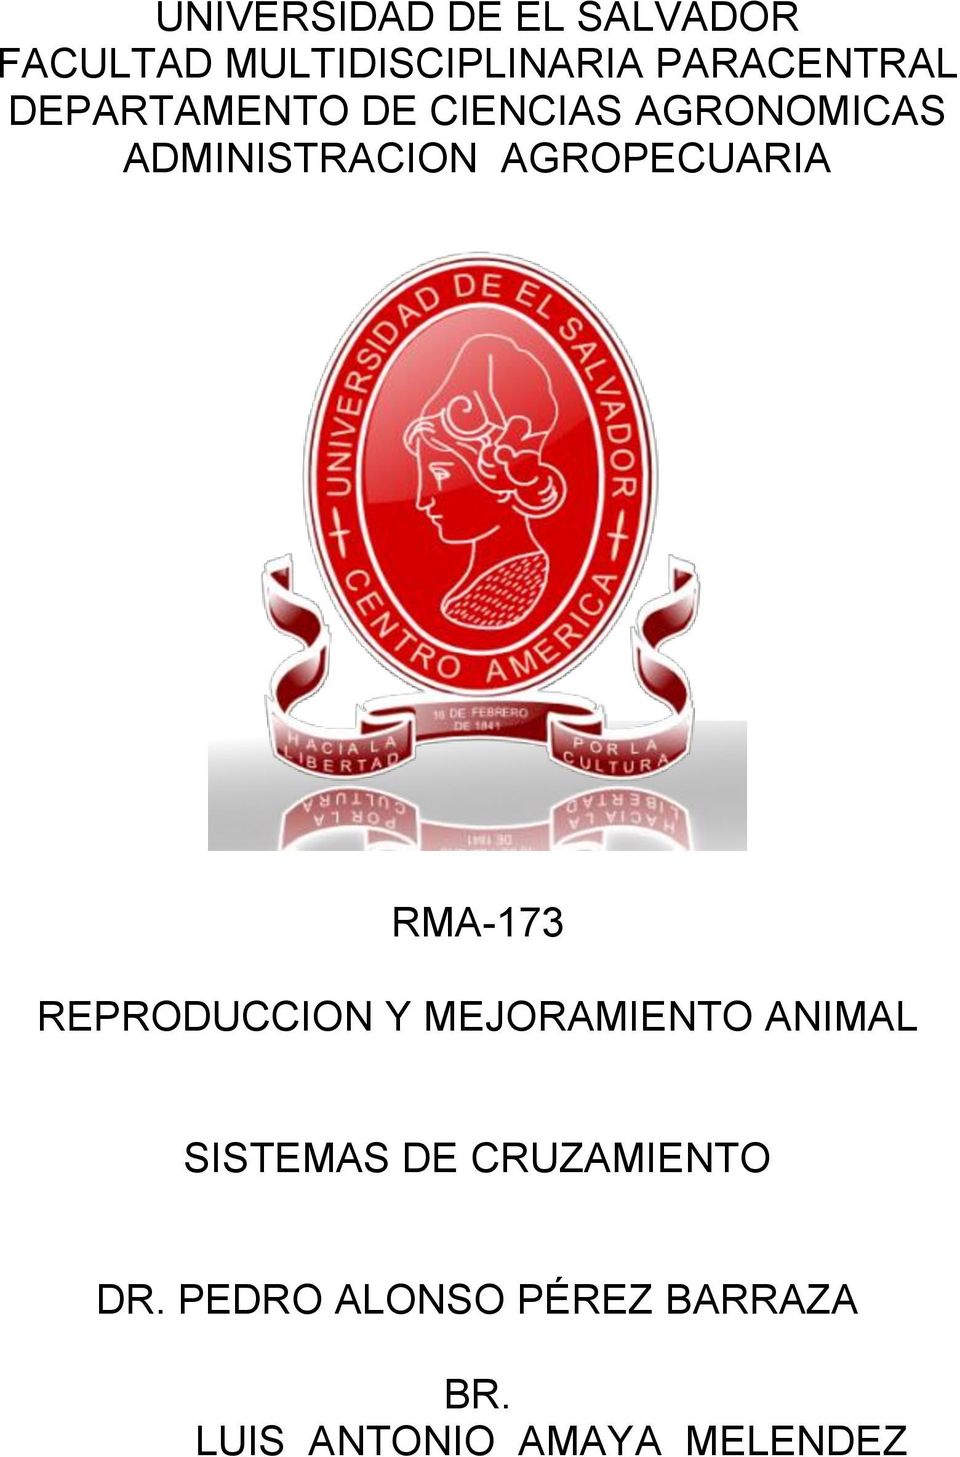 AGROPECUARIA RMA-173 REPRODUCCION Y MEJORAMIENTO ANIMAL SISTEMAS